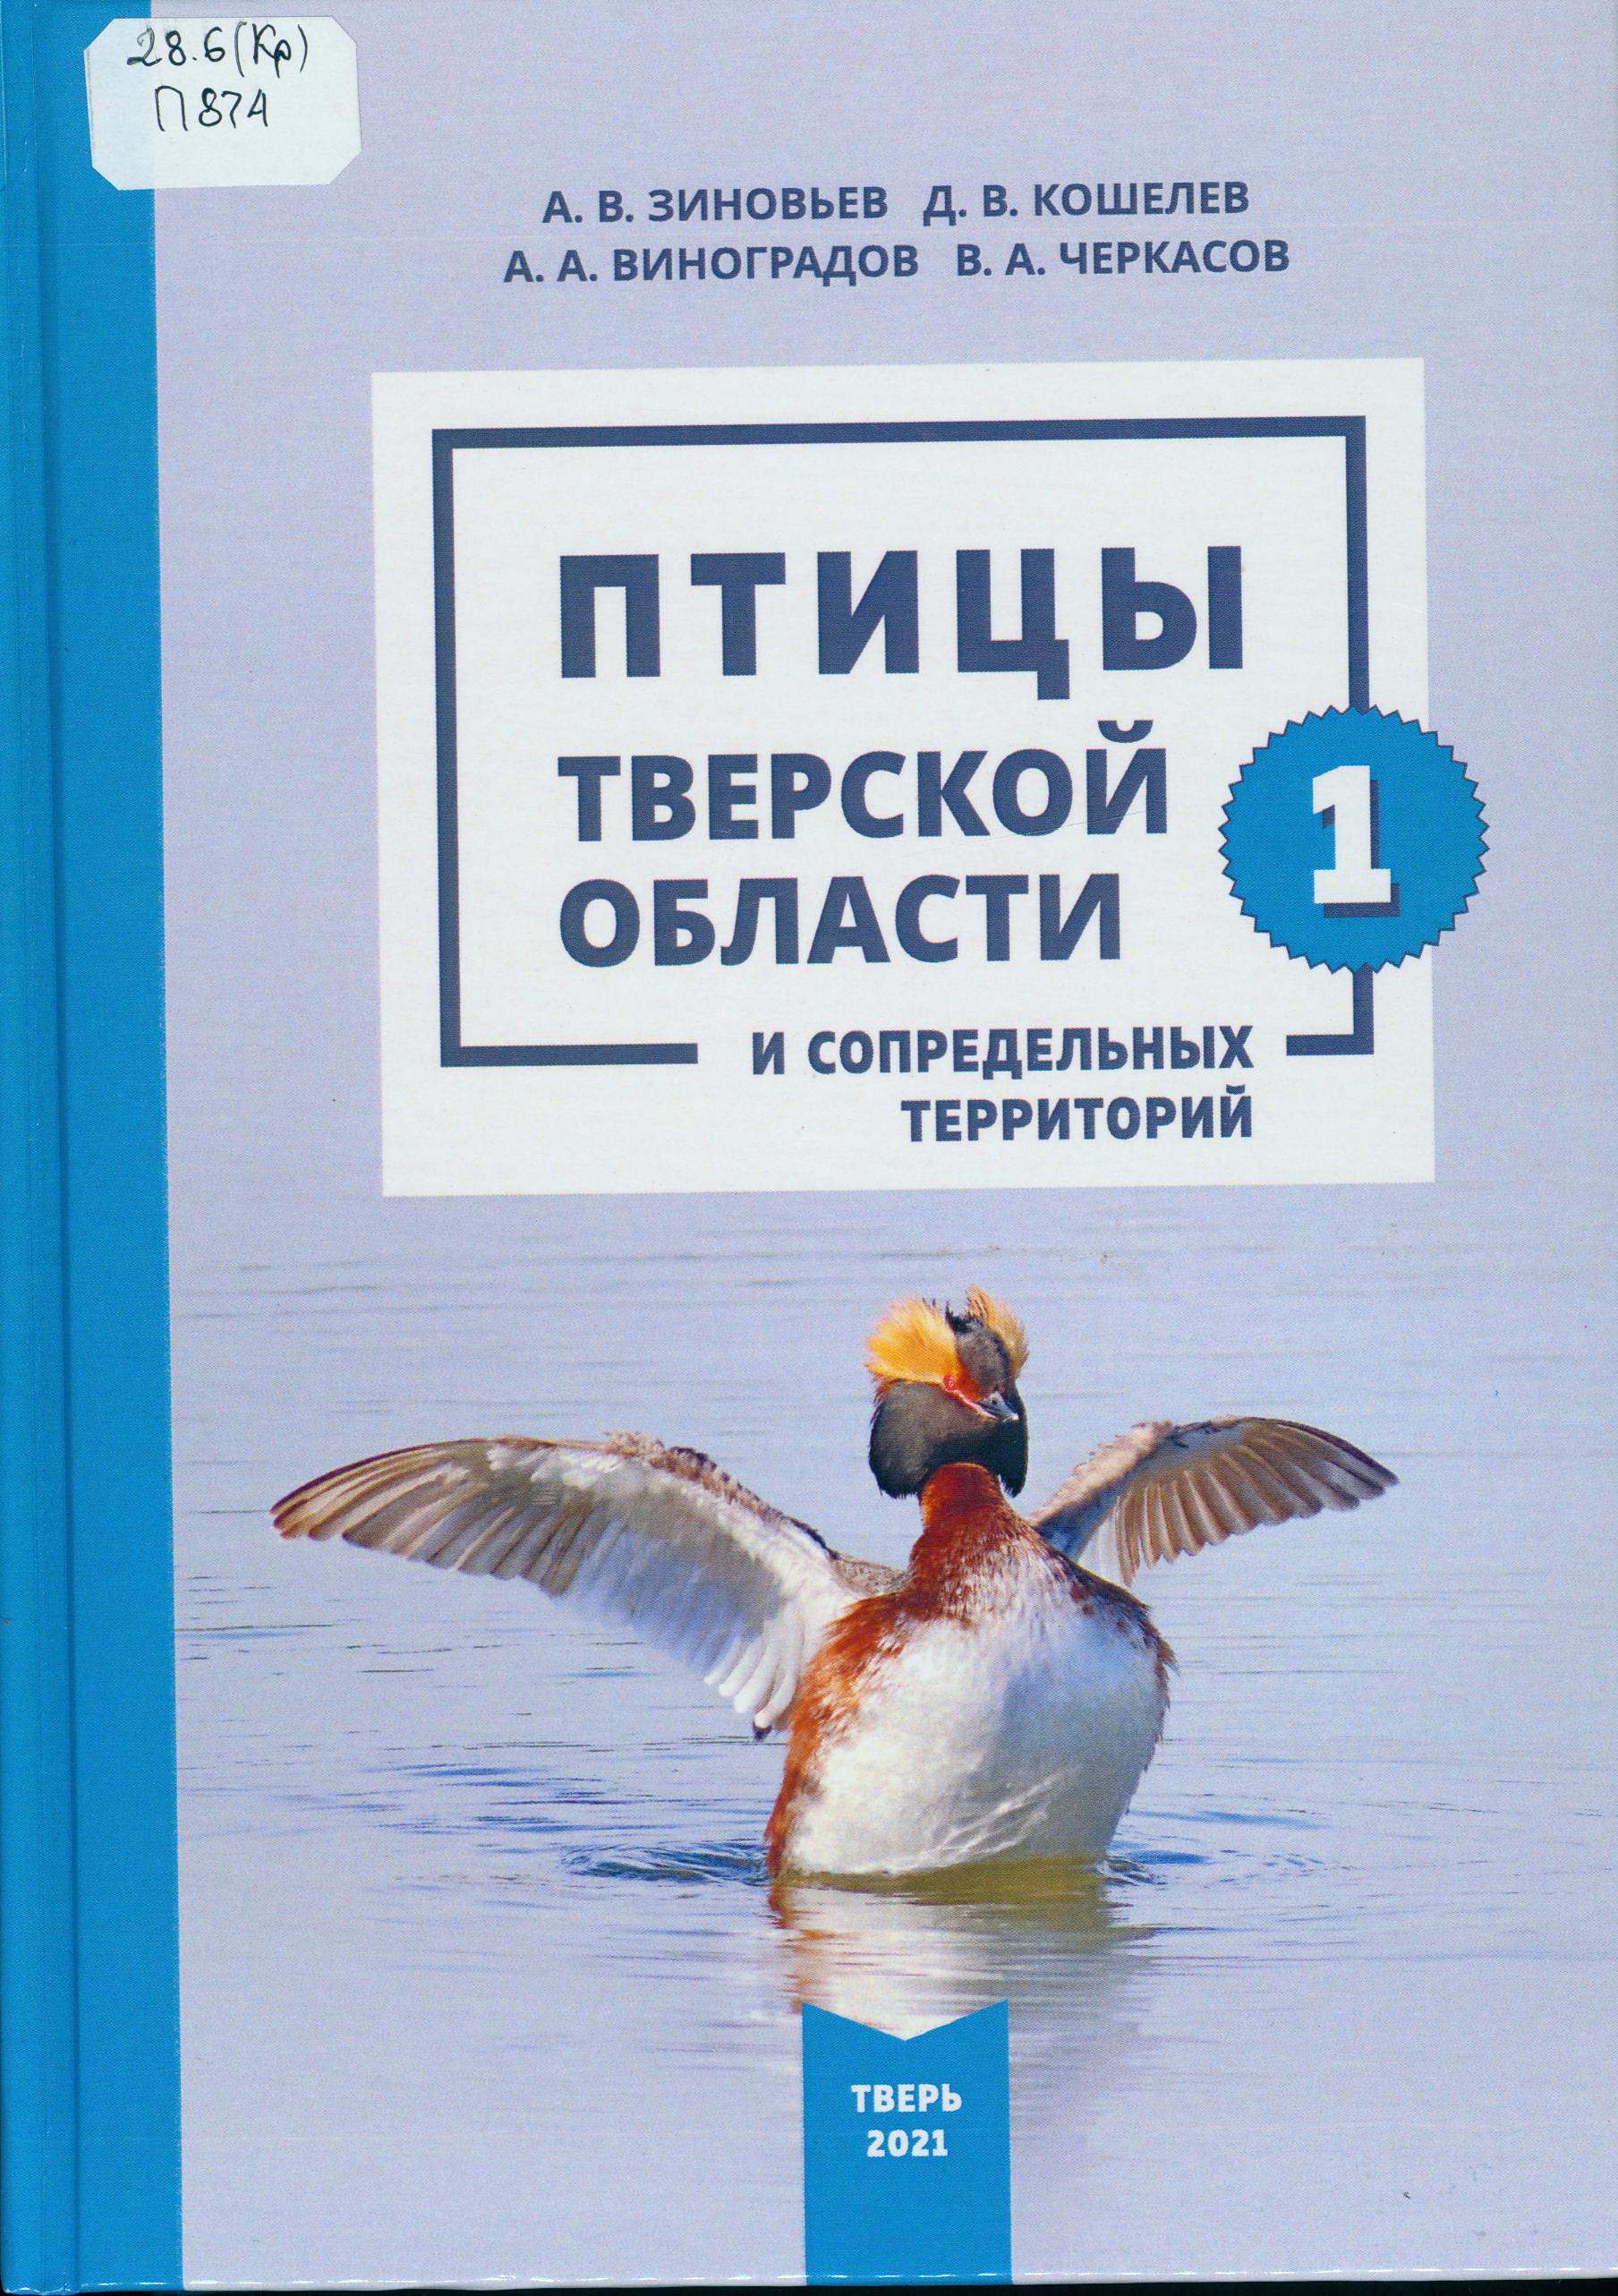 Птицы Тверской области и сопредельных территорий